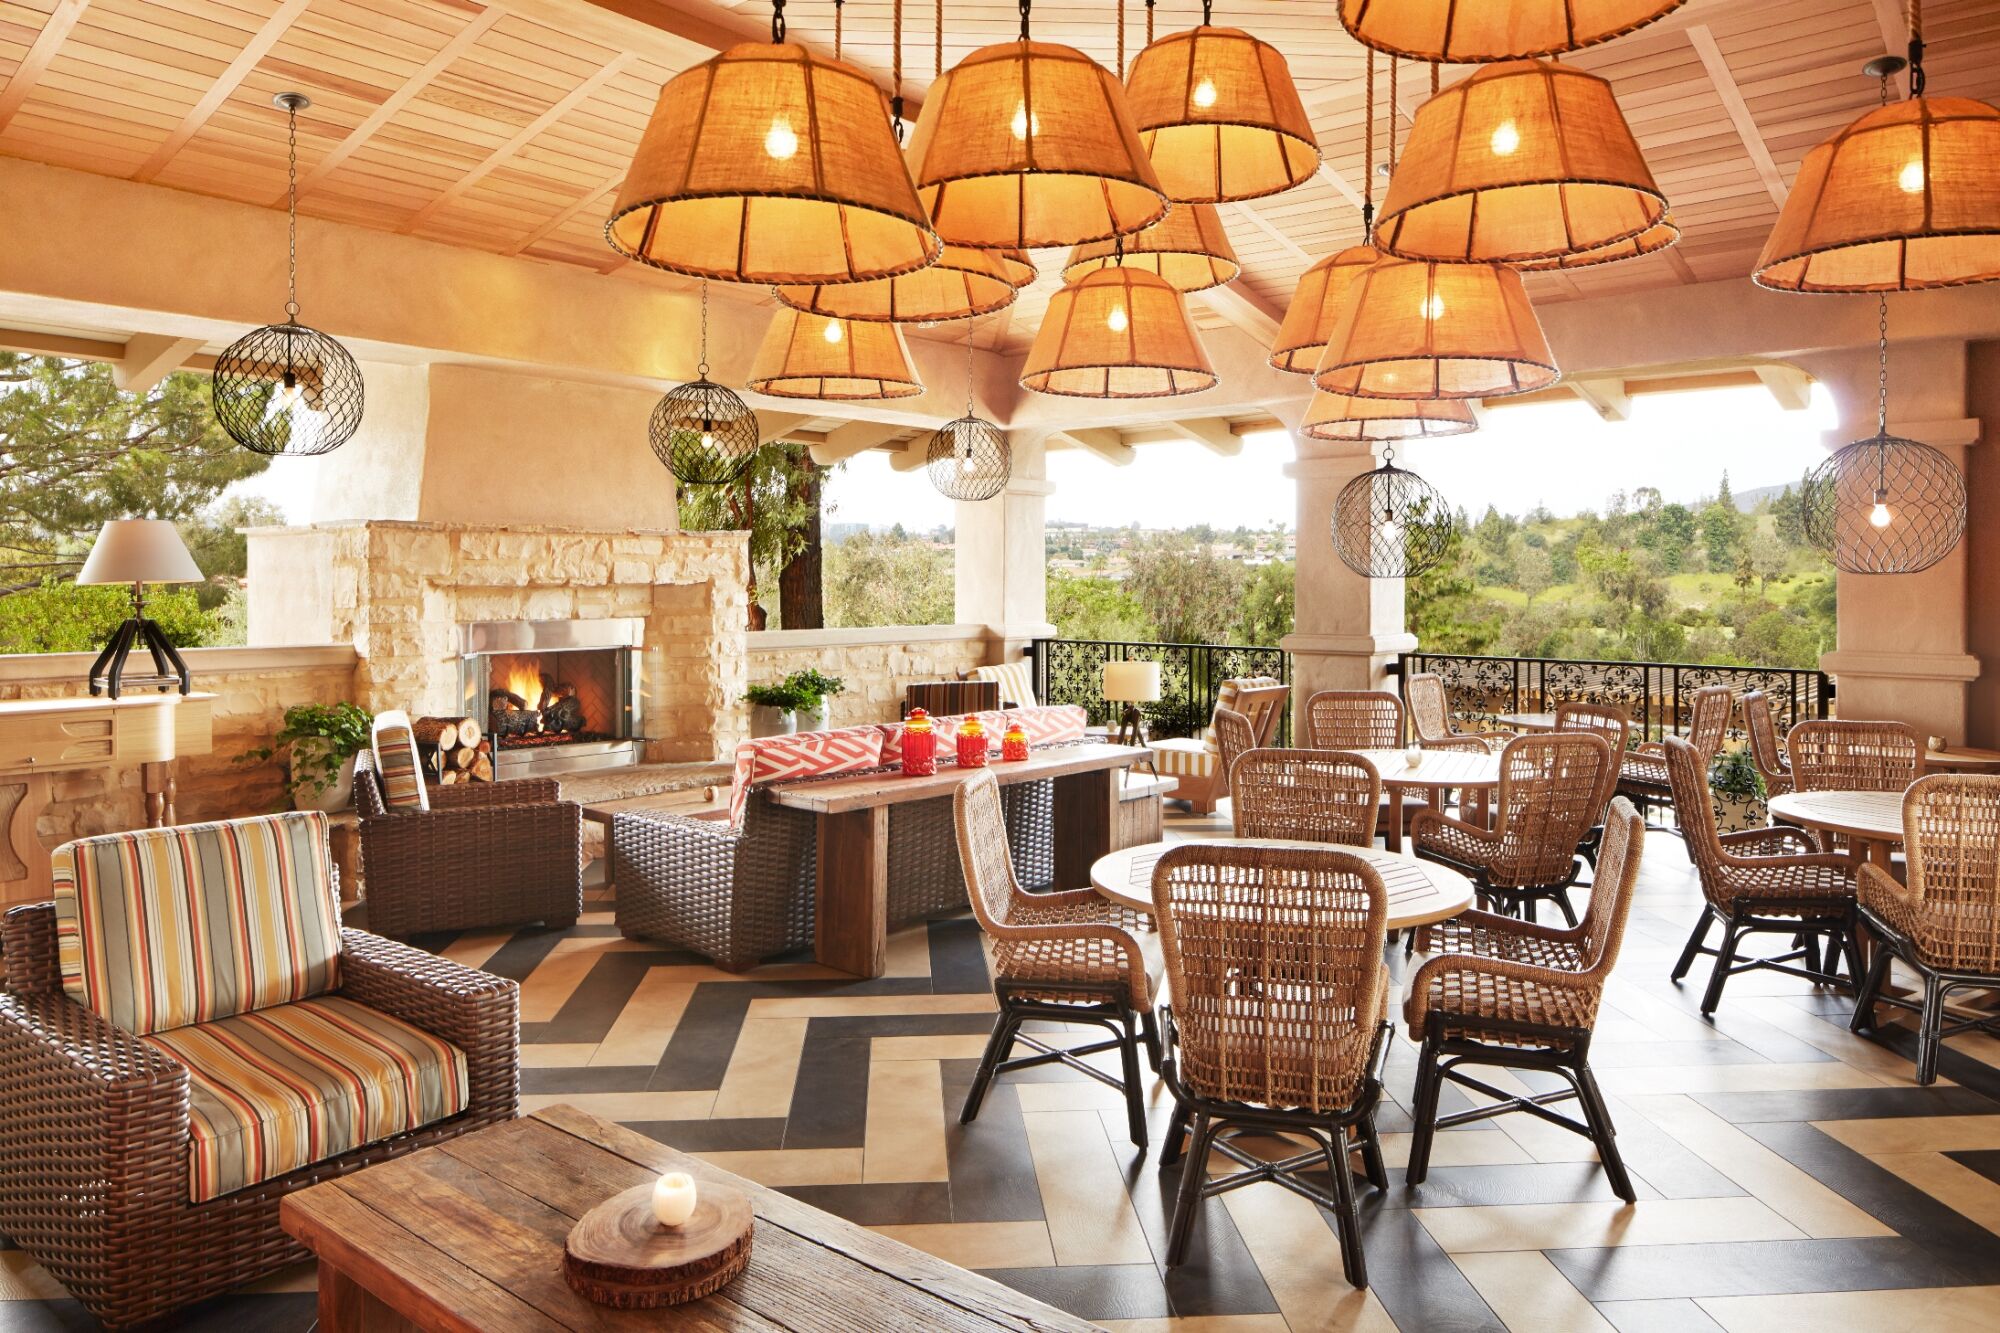 The patio at Avant restaurant overlooks the Rancho Bernardo Inn golf course.